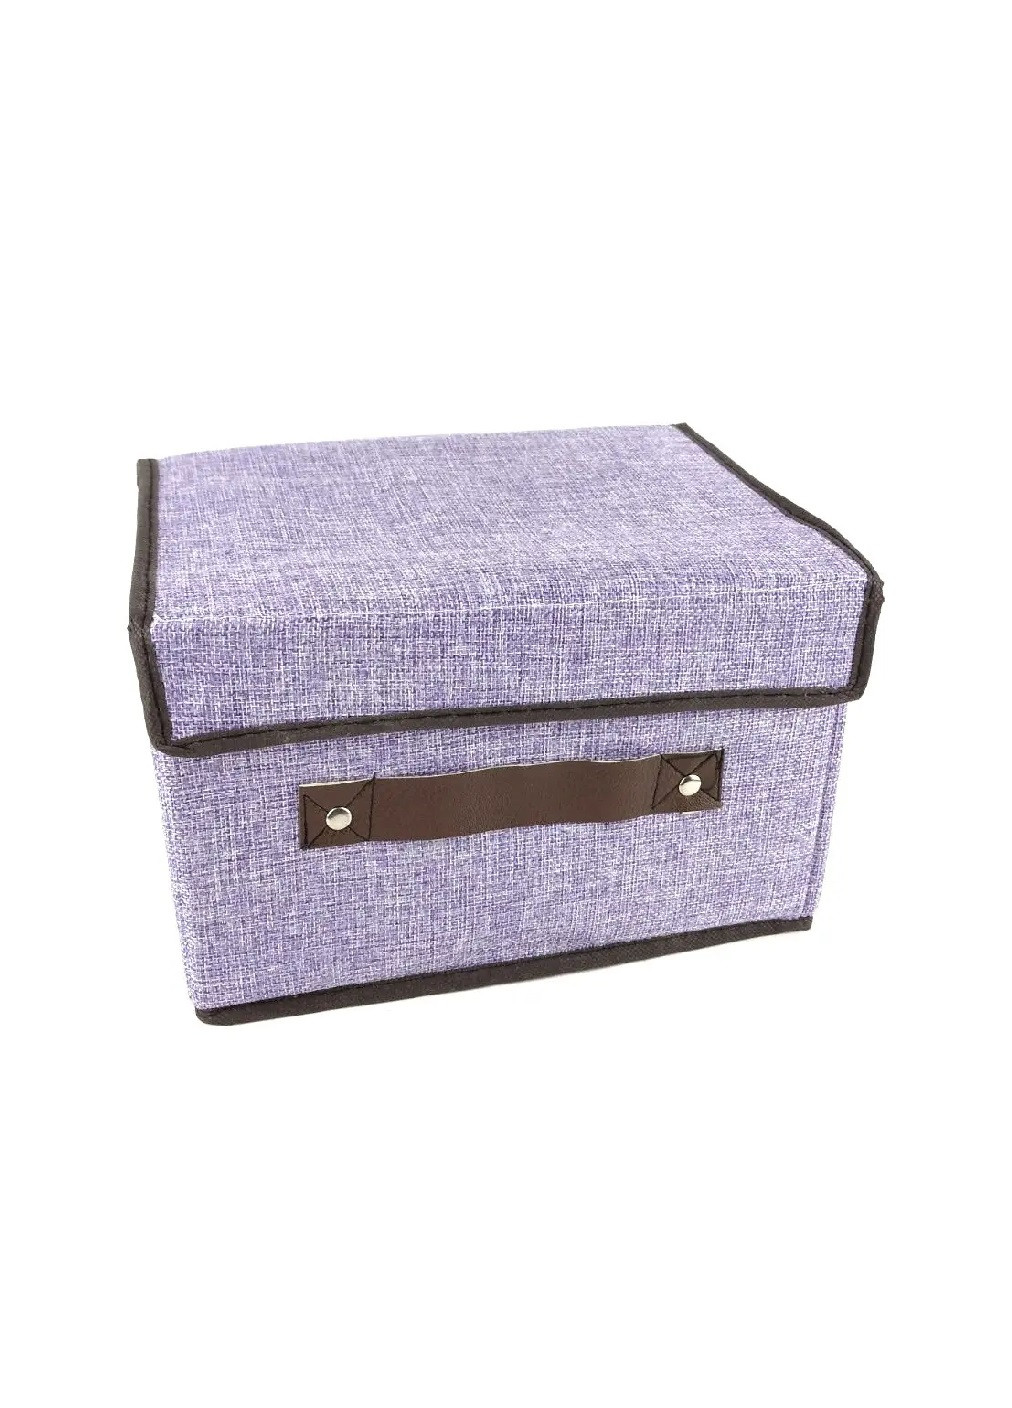 Органайзер короб ящик бокс для хранения вещей одежды белья игрушек аксессуаров 26х18.5х16 см (475840-Prob) Фиолетовый Unbranded (272099059)